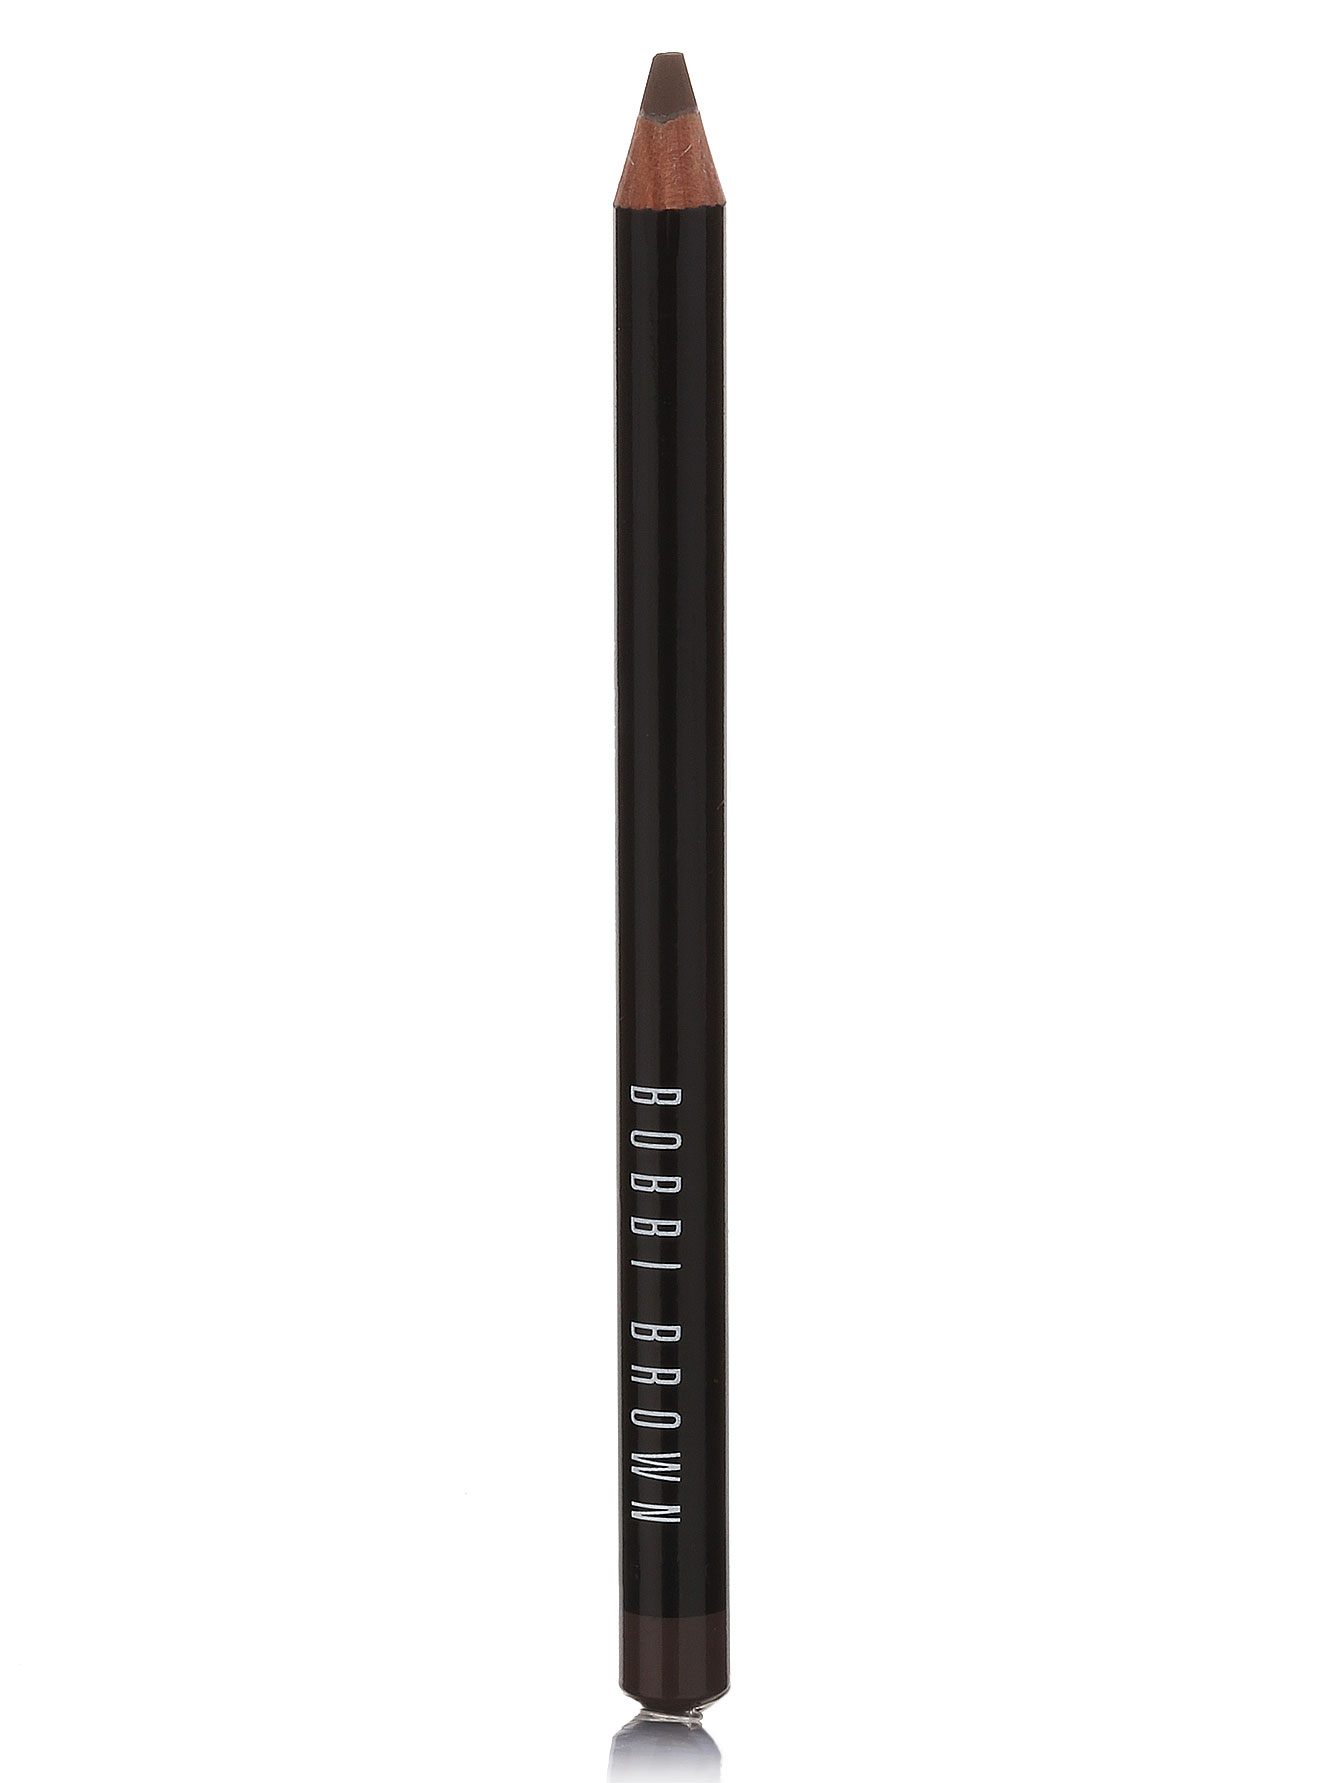  Карандаш для бровей - Mahogany, Brow Pencil - Общий вид